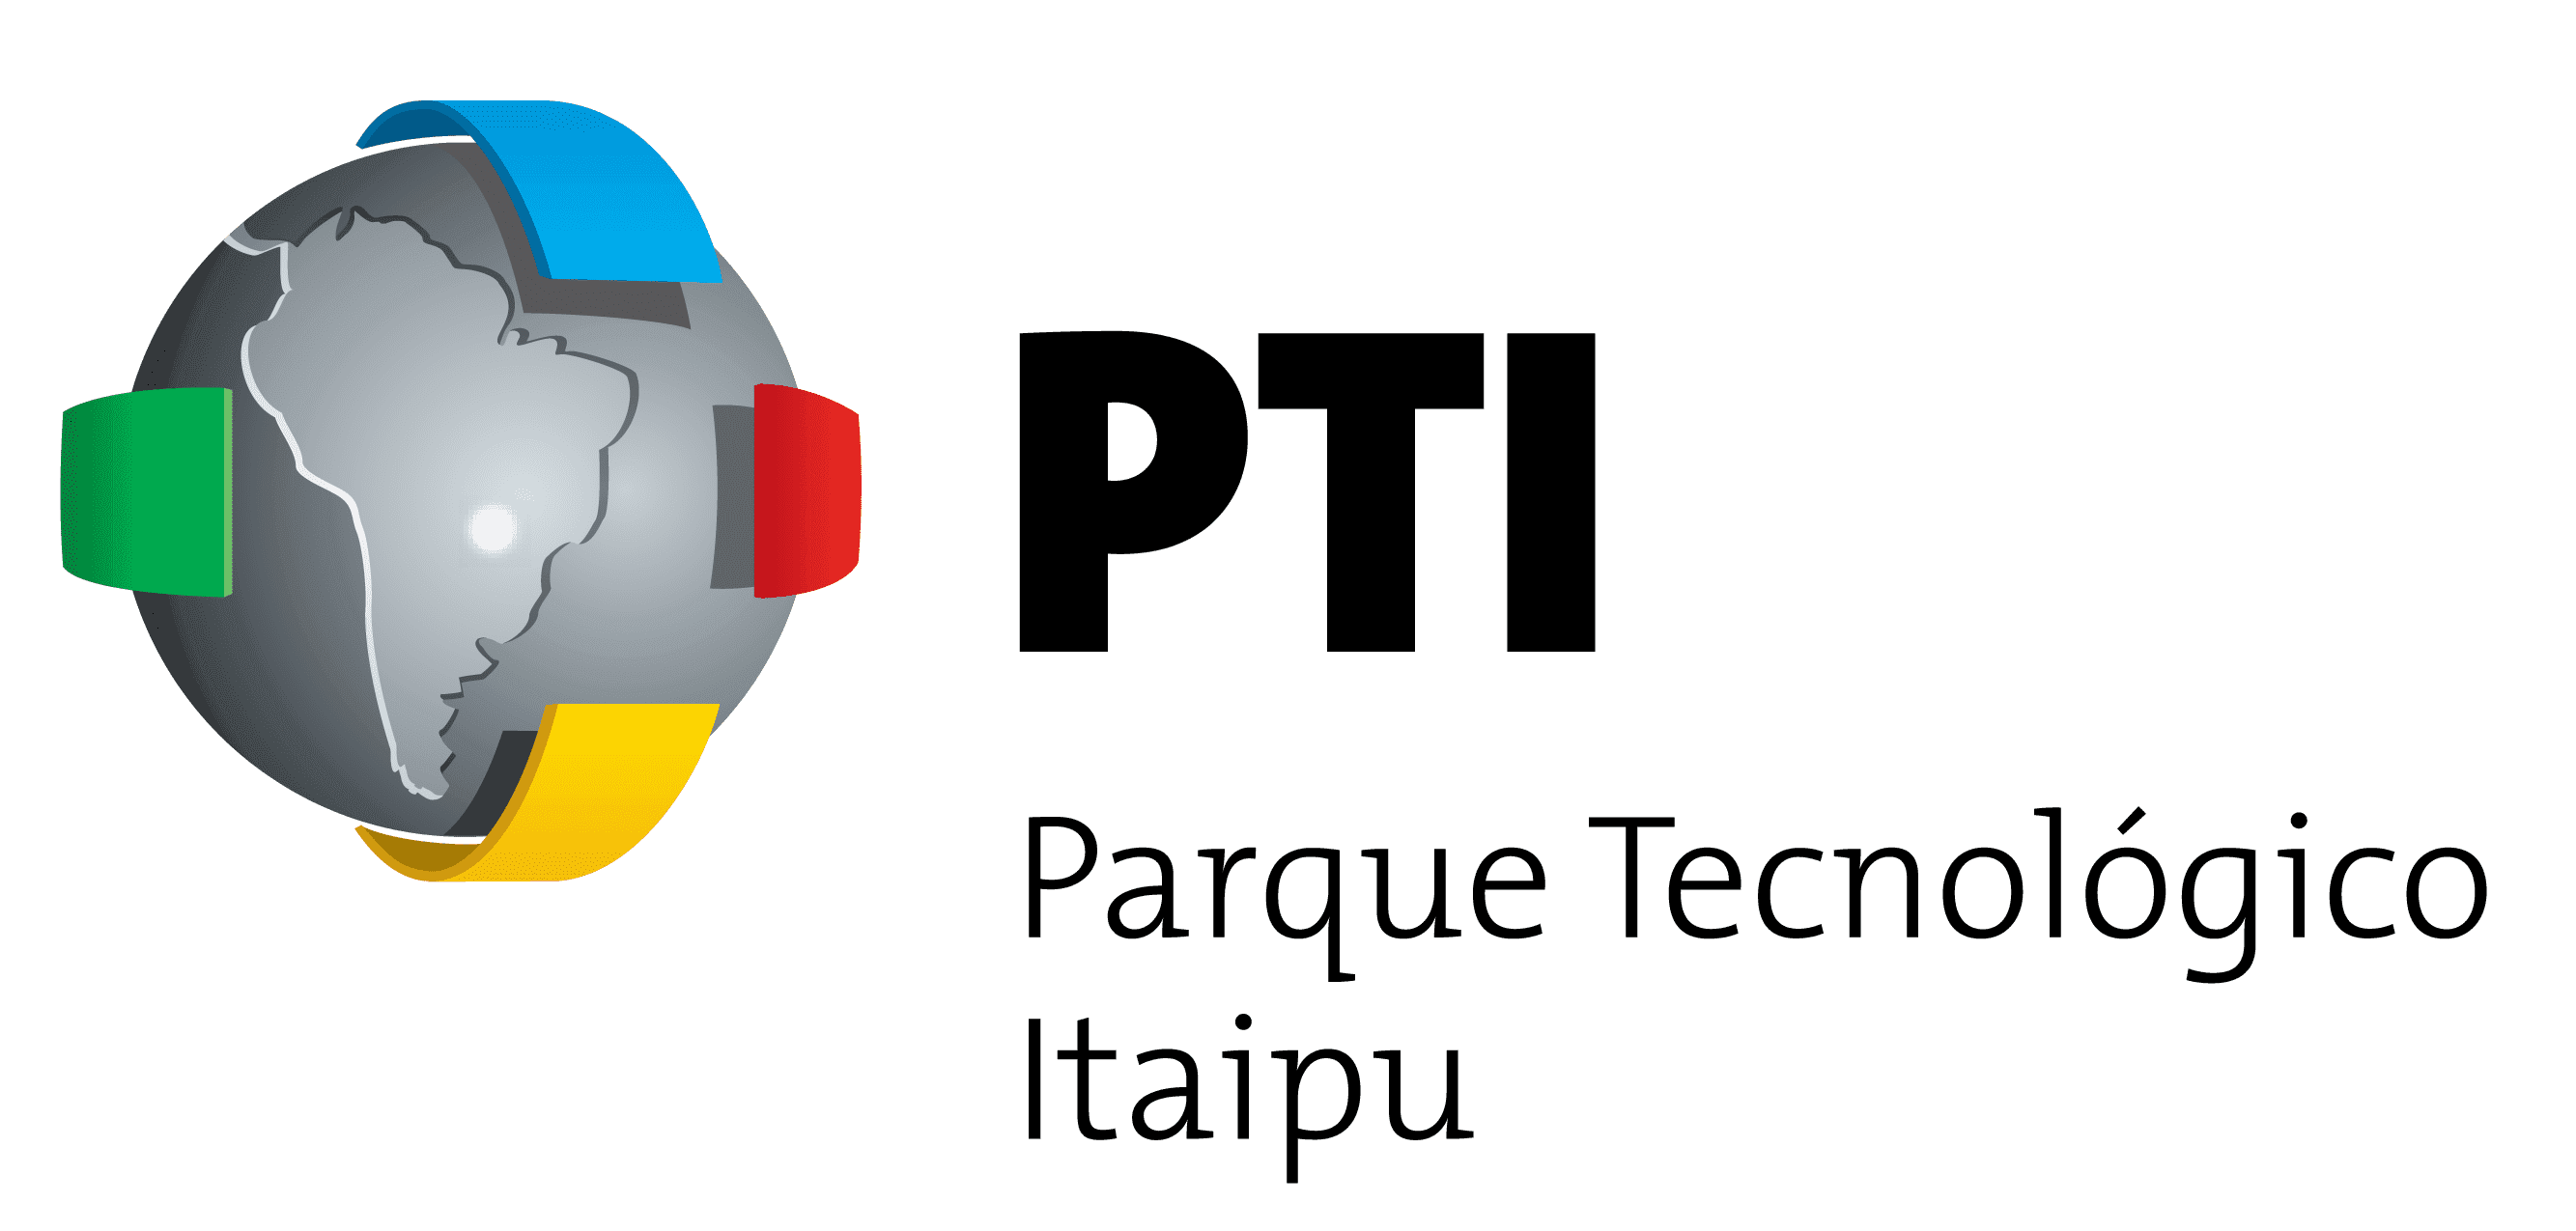 logo PTI - Parque Tecnológico Itaipu